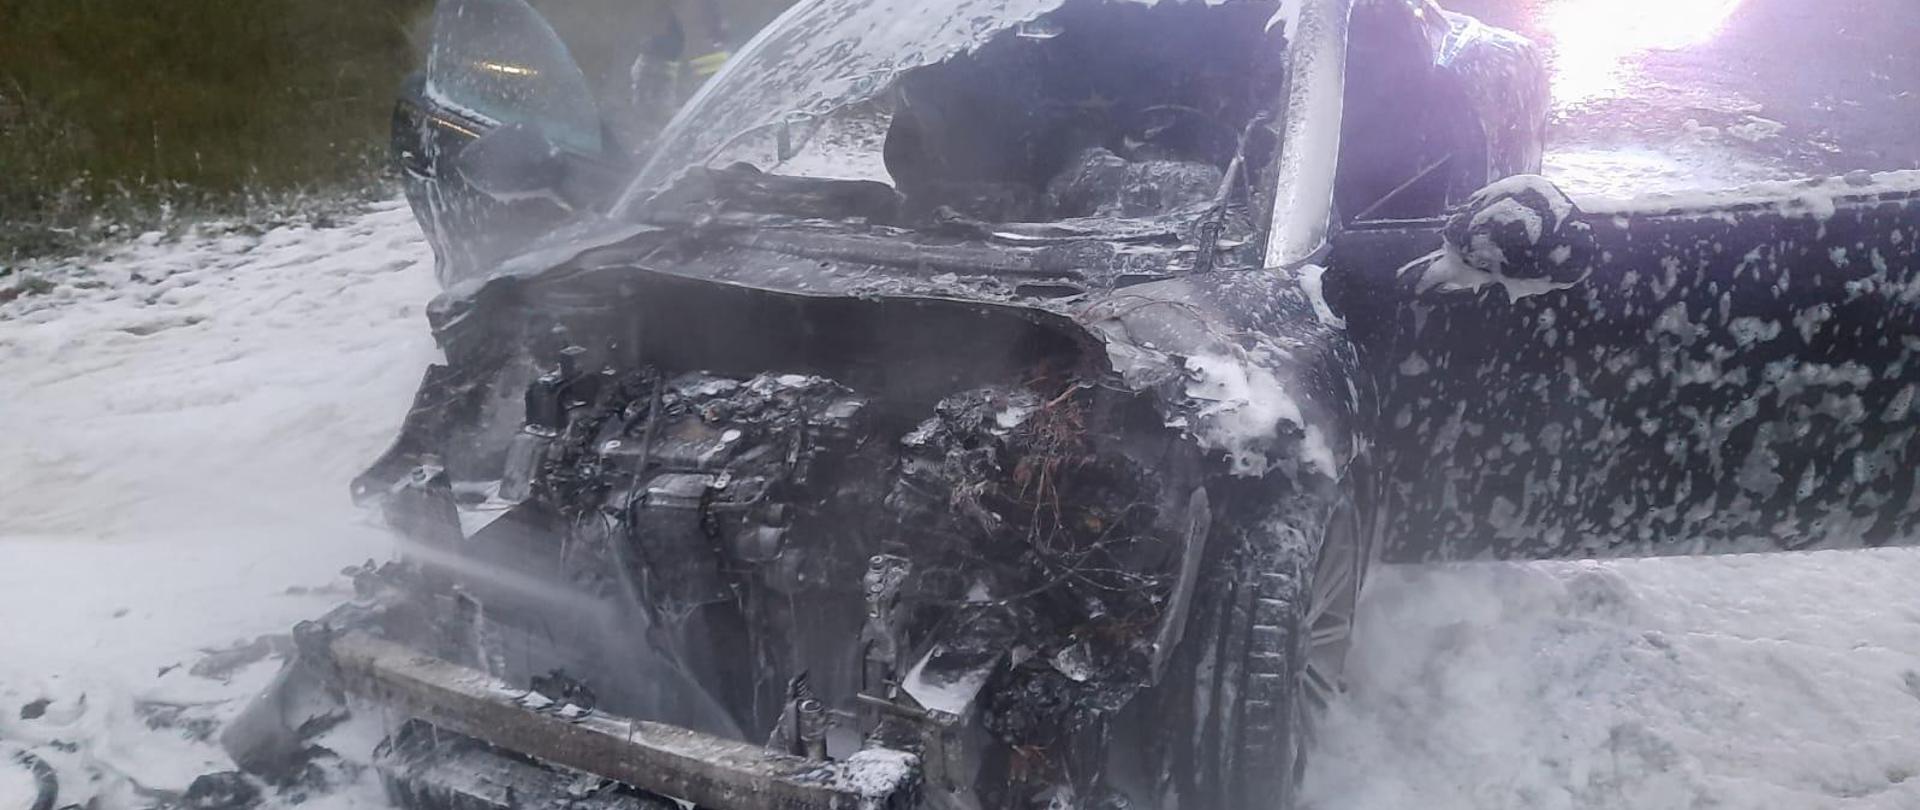 Widok przodu spalonego samochodu